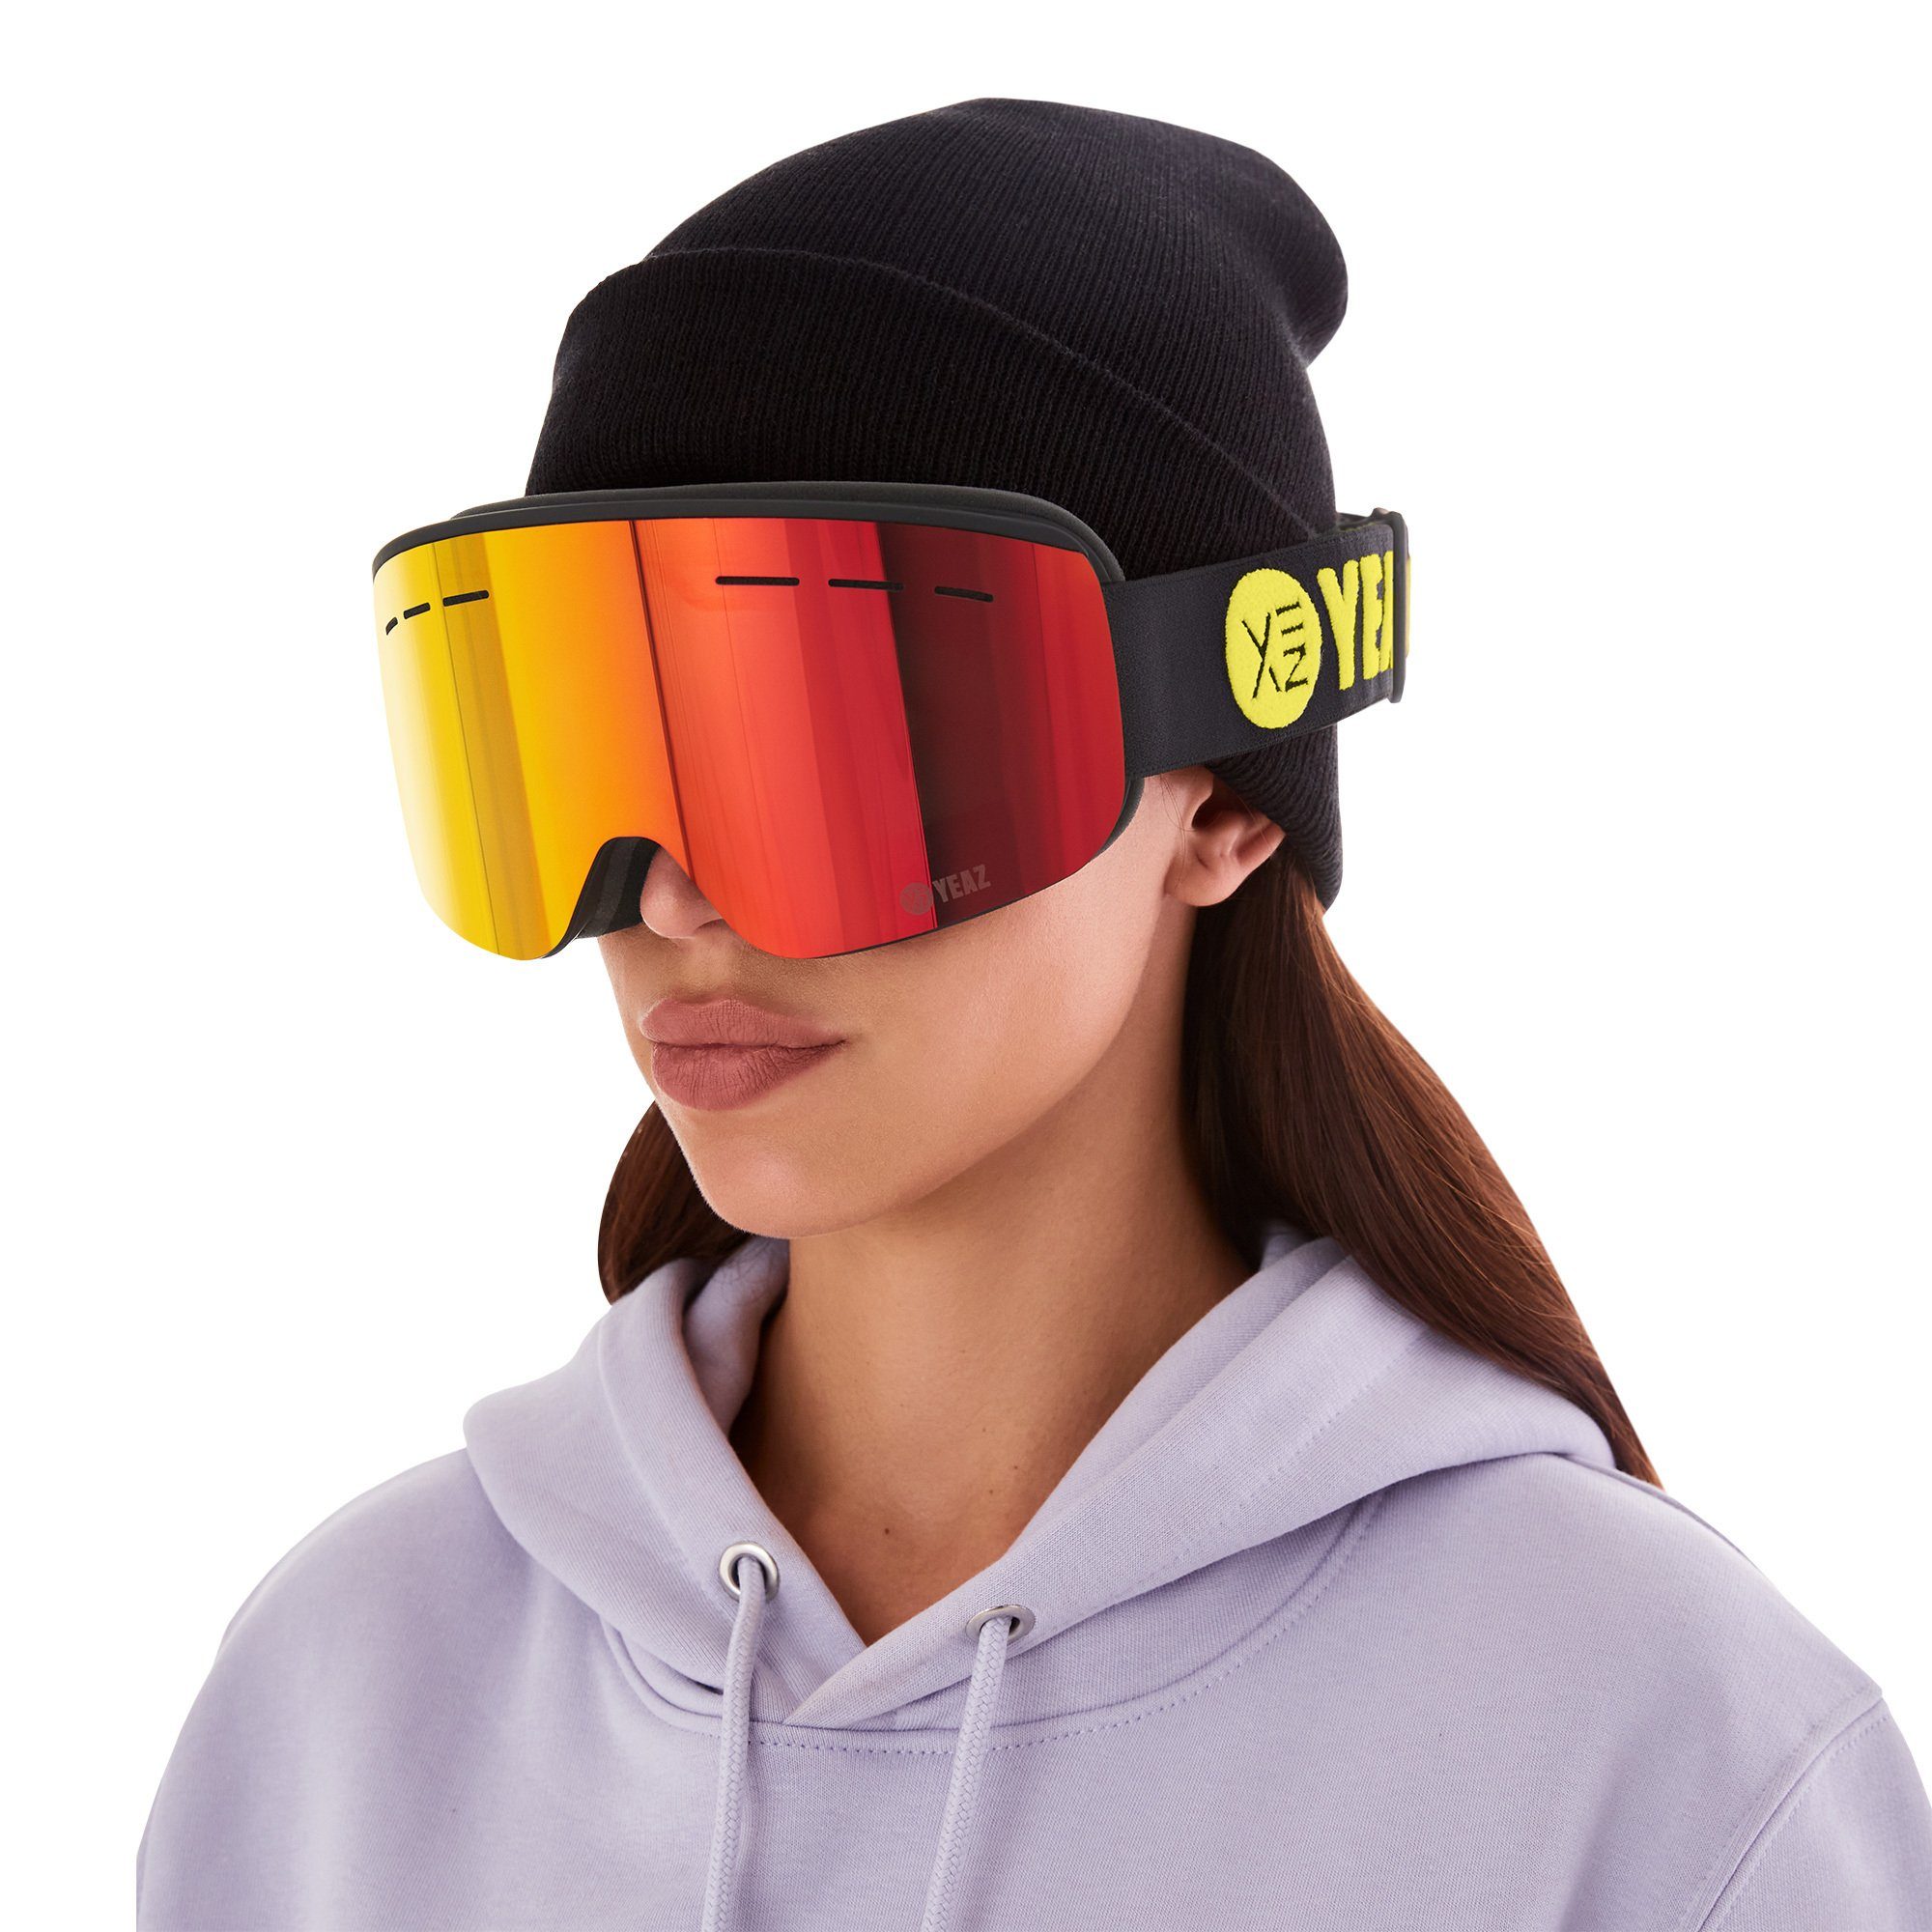 YEAZ Skibrille RISE ski- snowboardbrille und und Snowboardbrille Jugendliche für Erwachsene Premium-Ski- schwarz